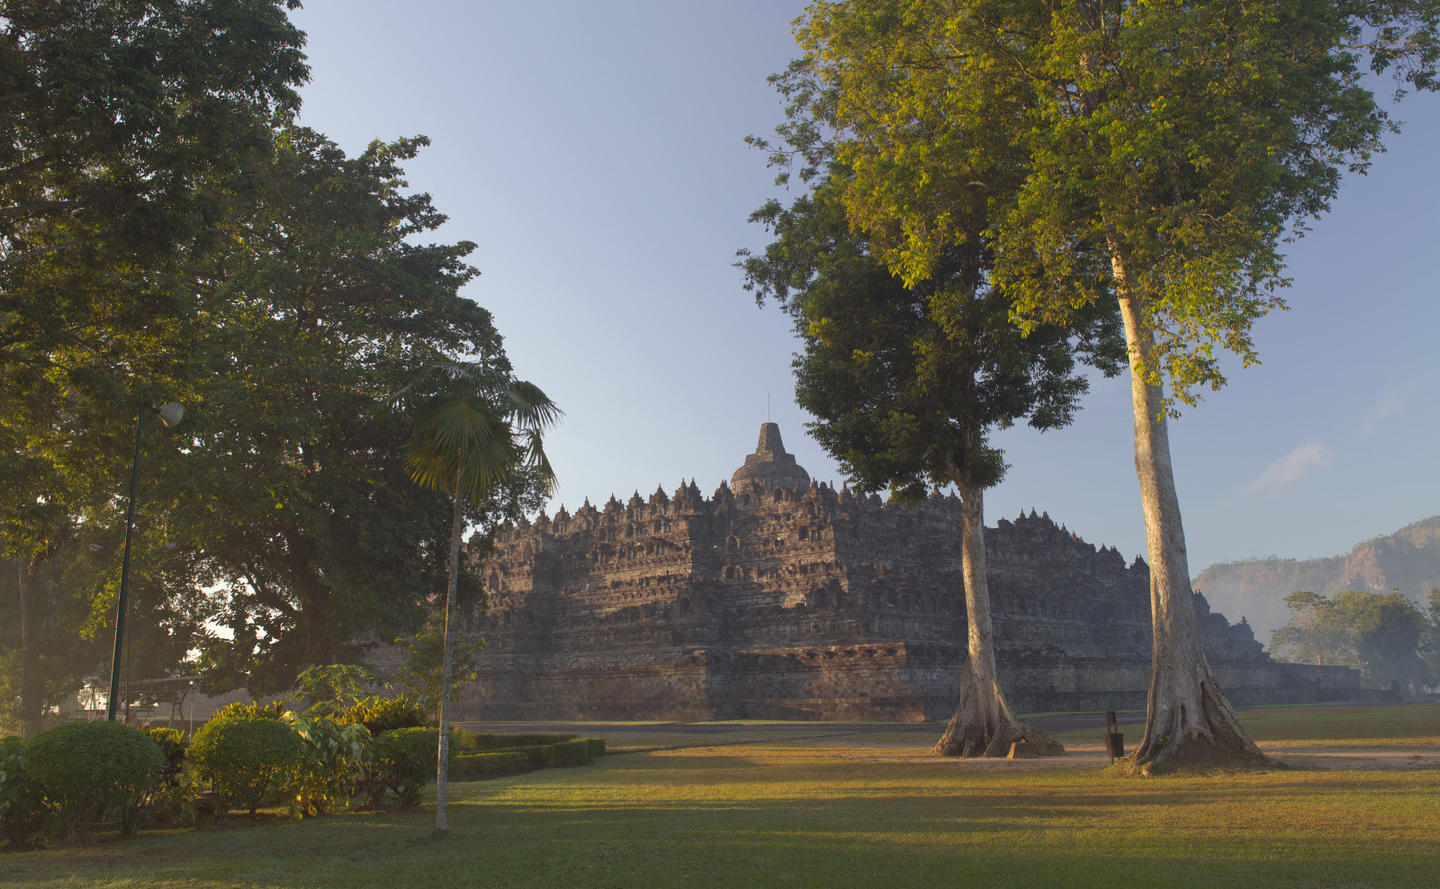 Borobudur - Indonesia